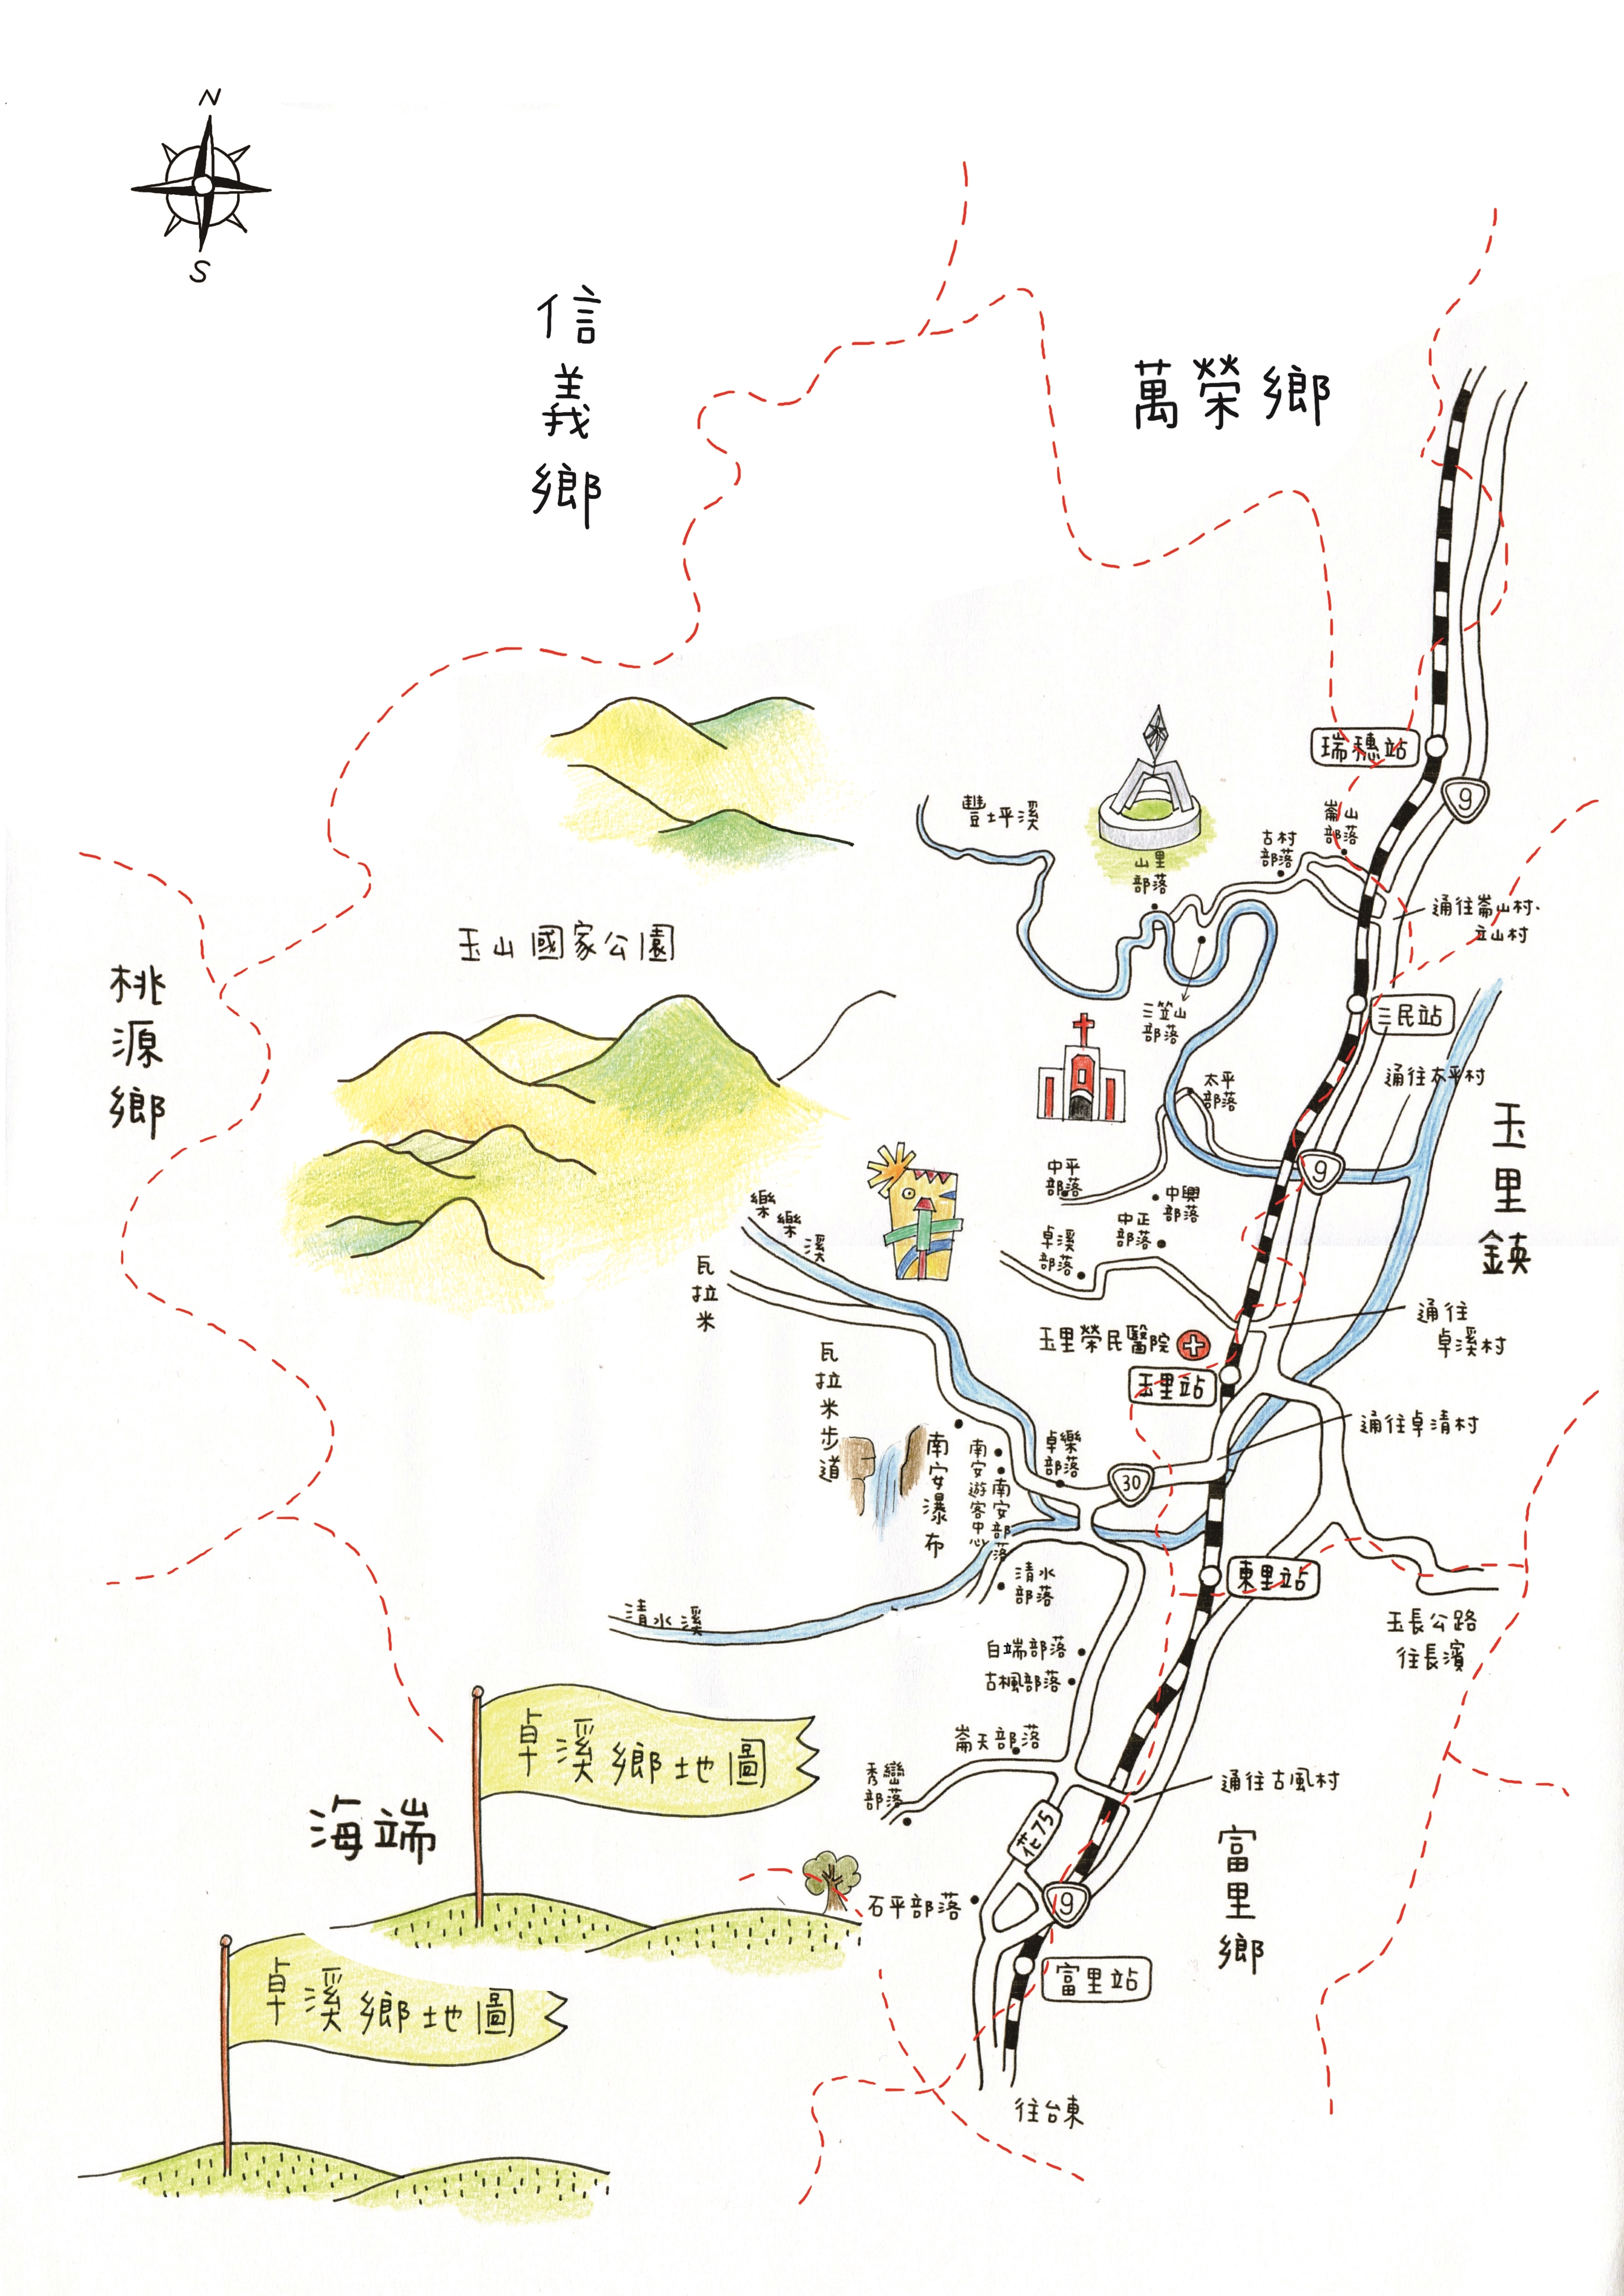 Zhuoxi Township Map